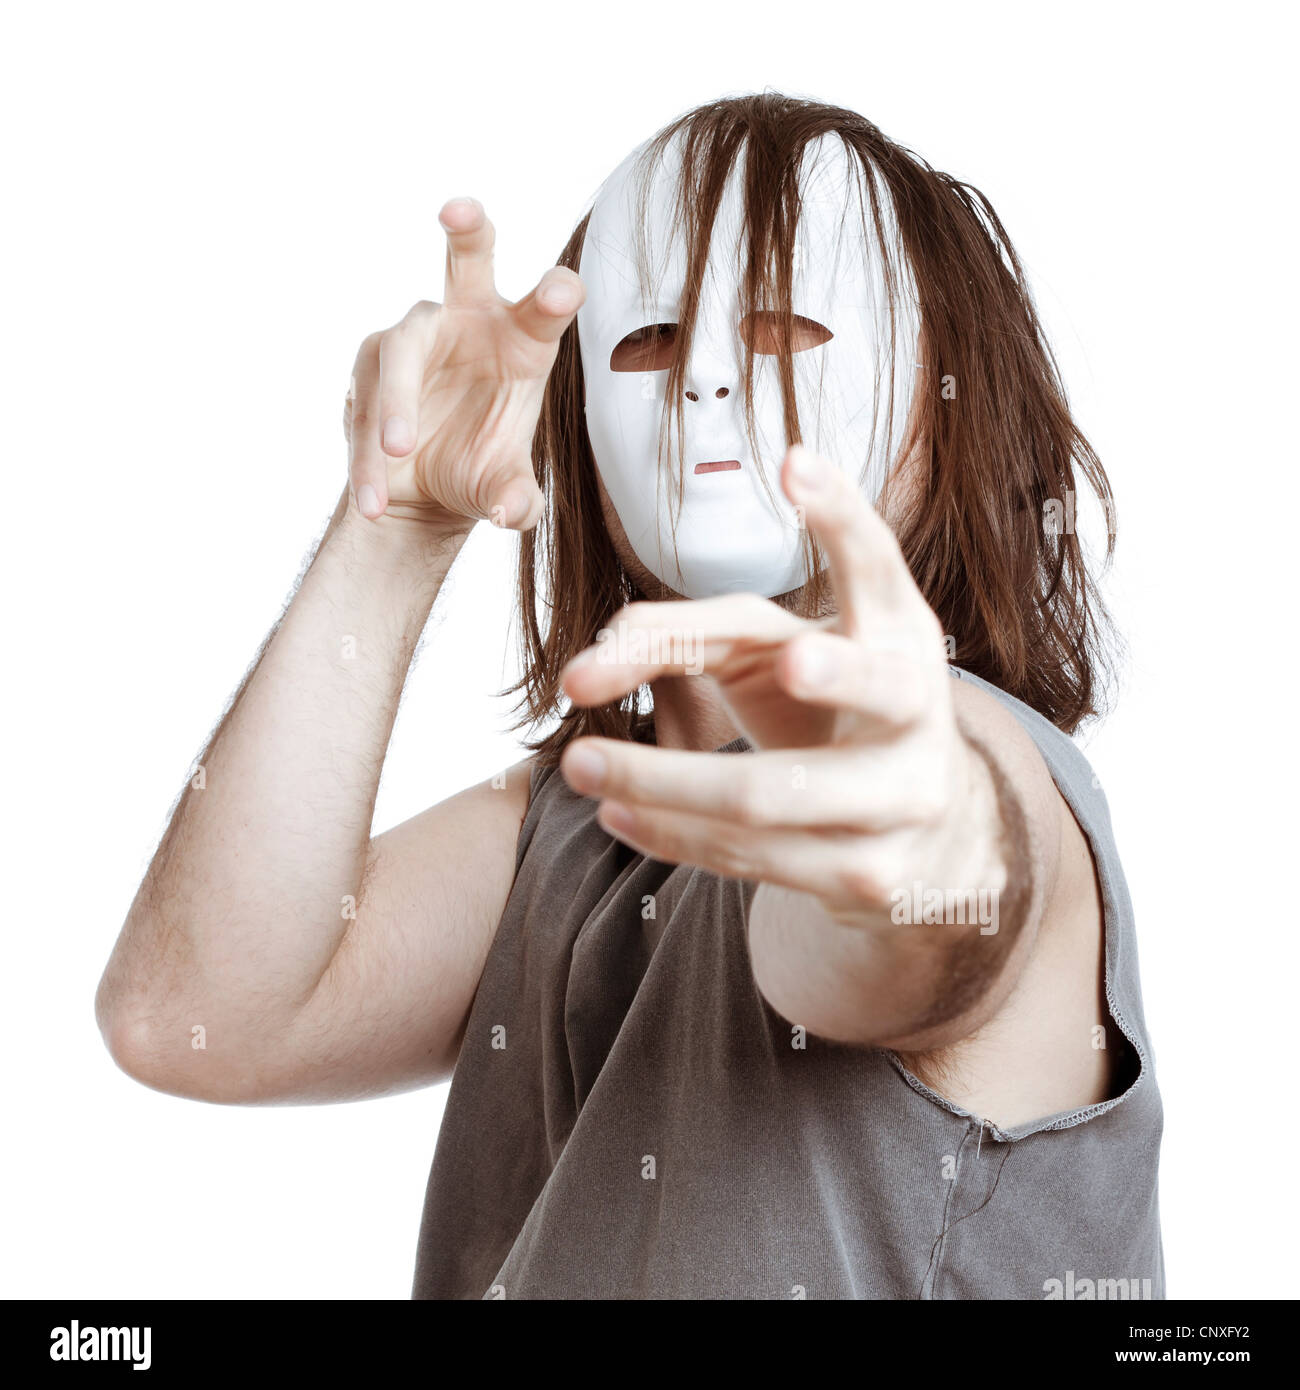 Insane scary masked man gesturing, isolated on white background. Stock Photo